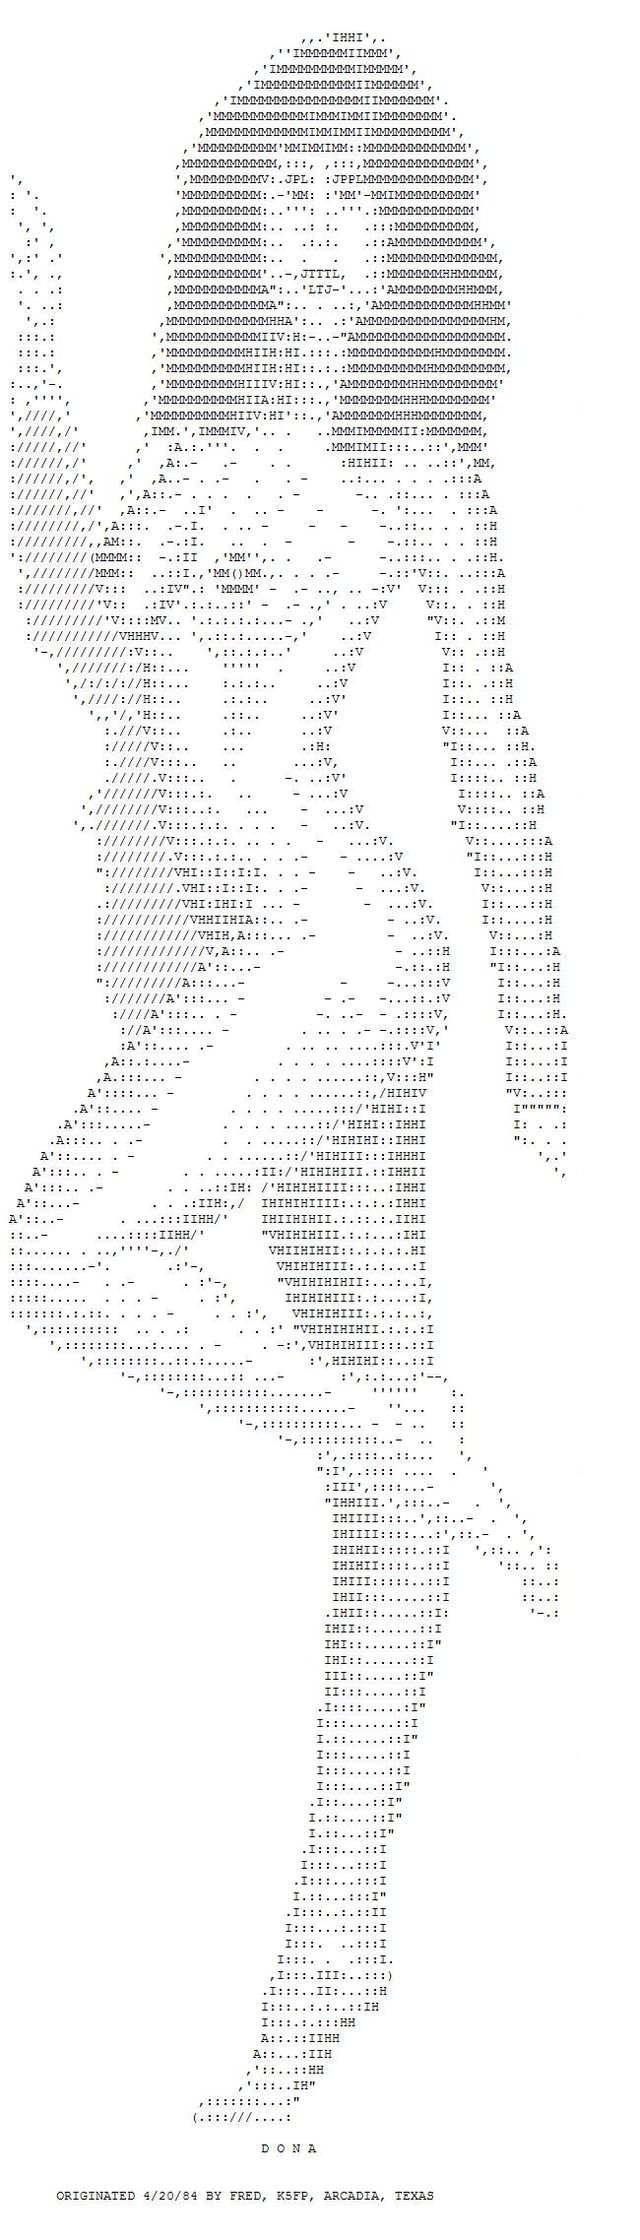 ASCII erotic images - 33